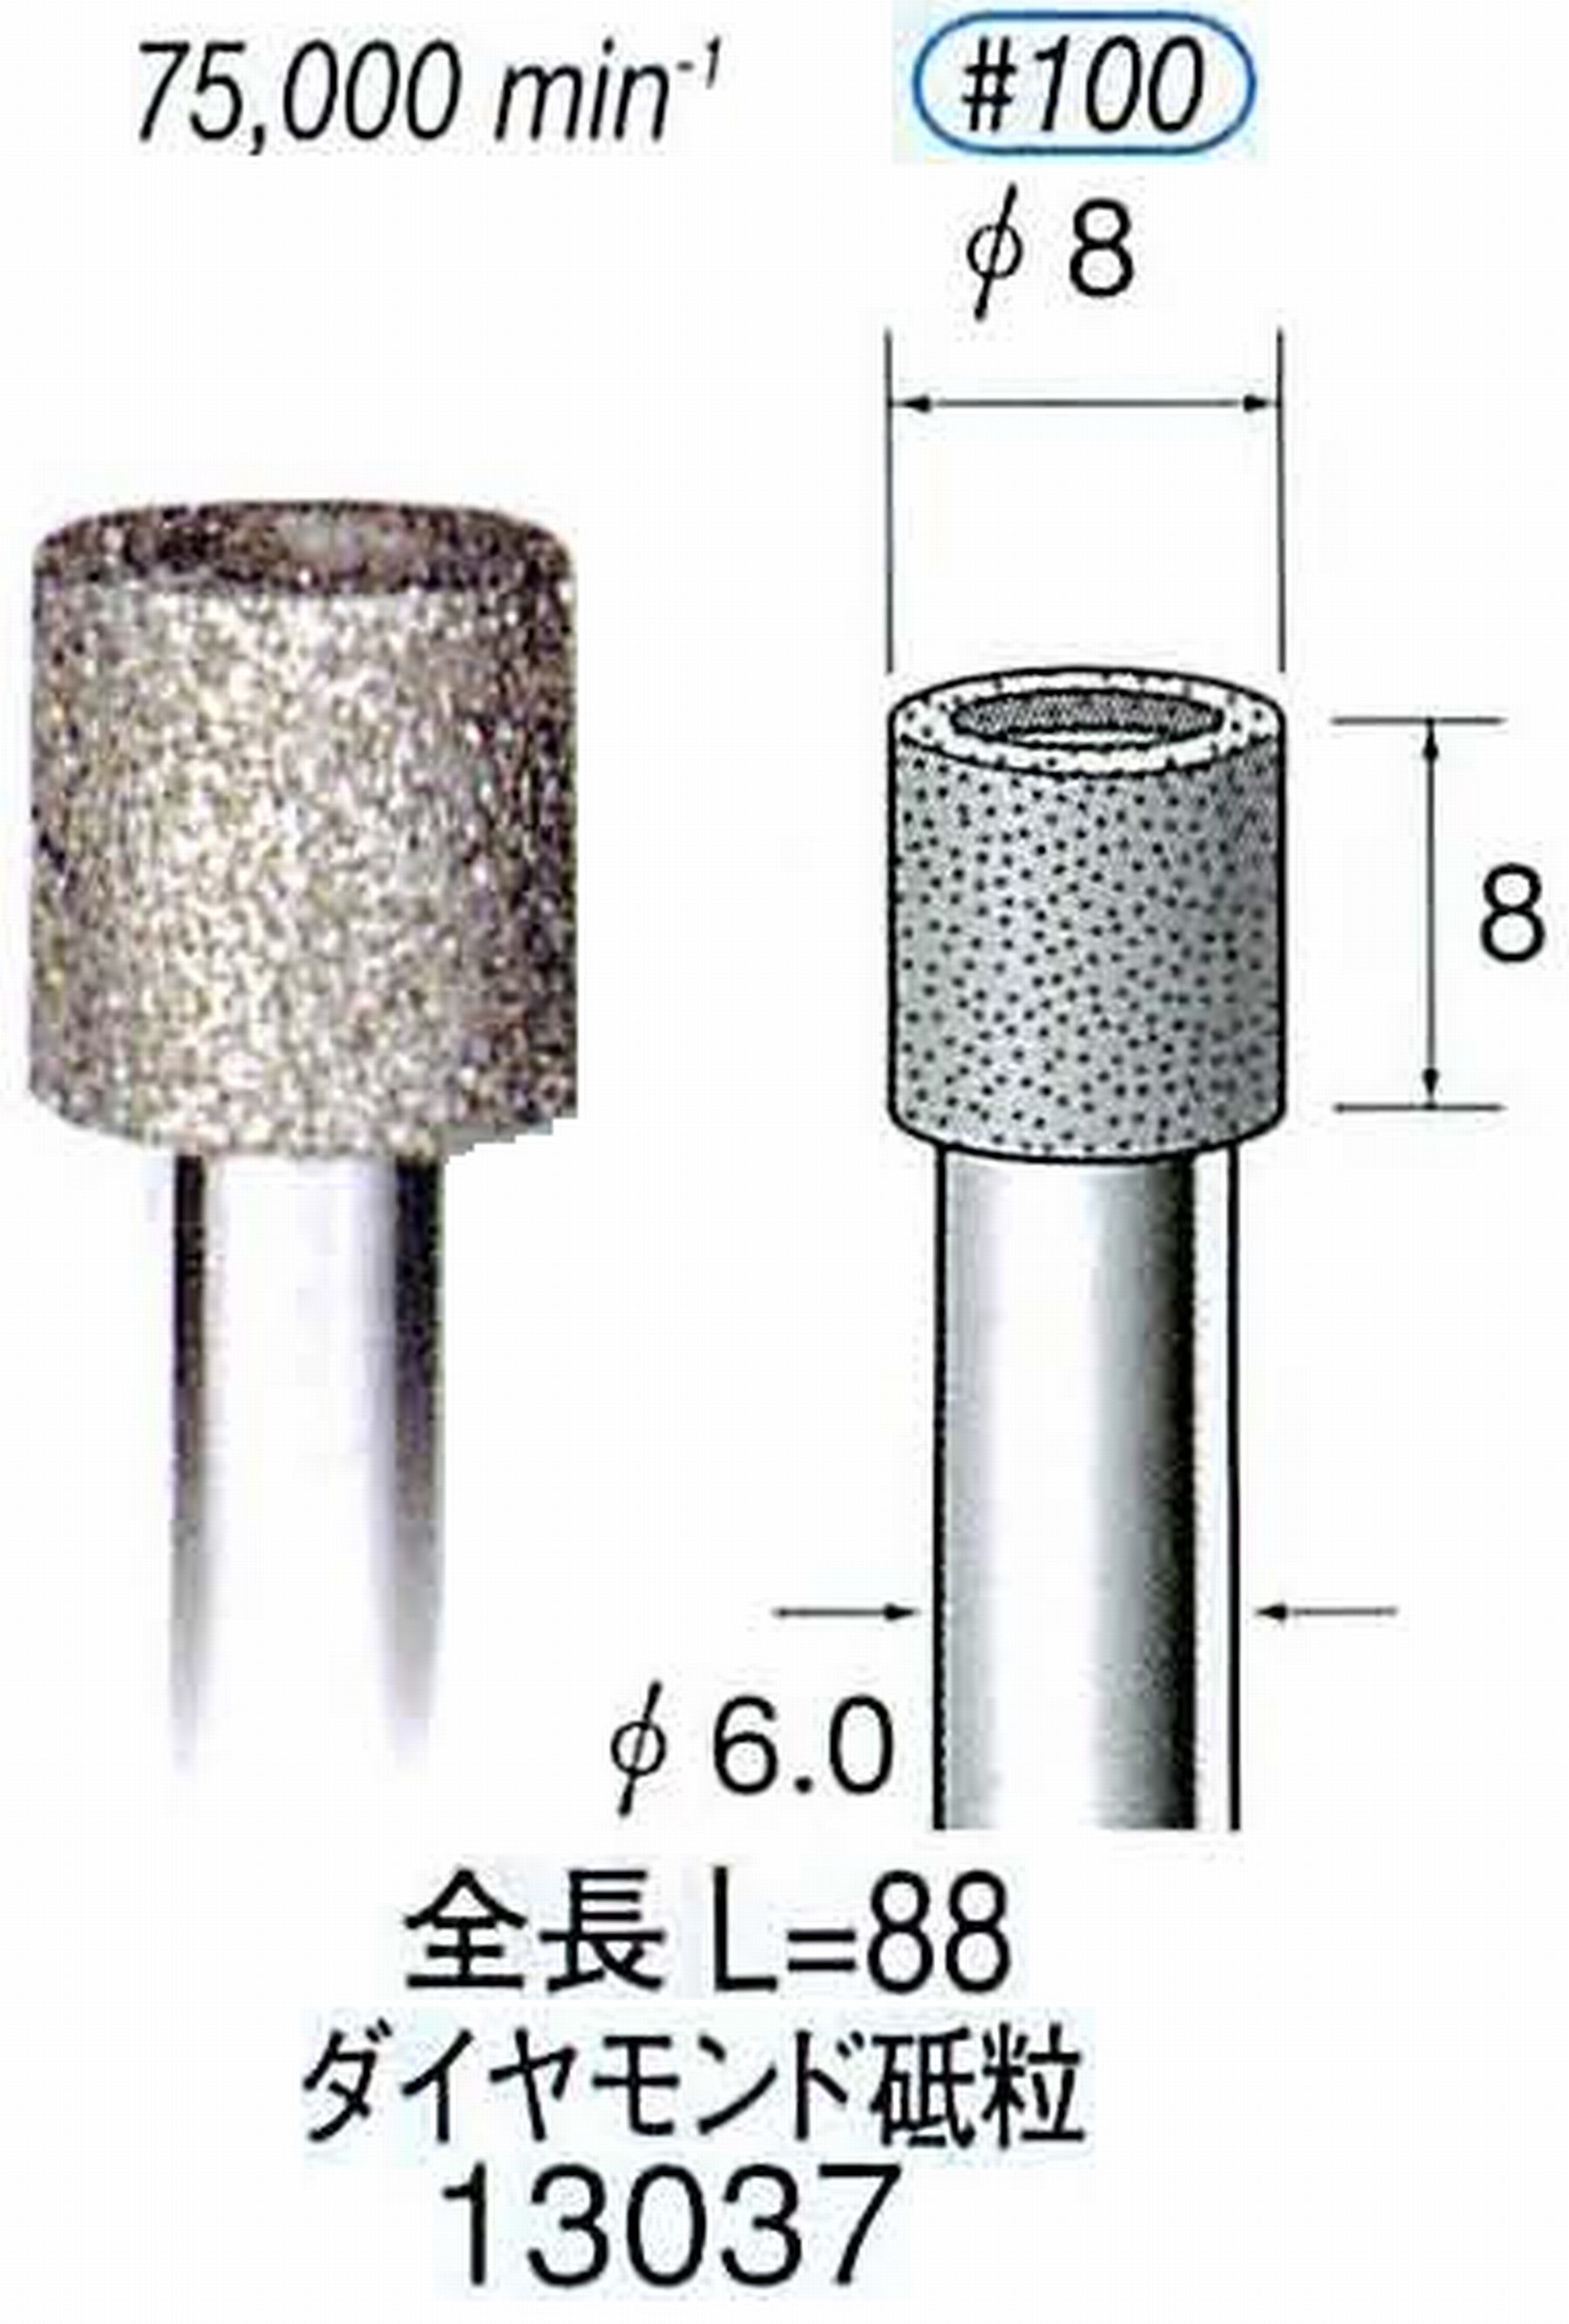 ナカニシ/NAKANISHI 電着ダイヤモンド ダイヤモンド砥粒 軸径(シャンク)φ6.0mm 13037